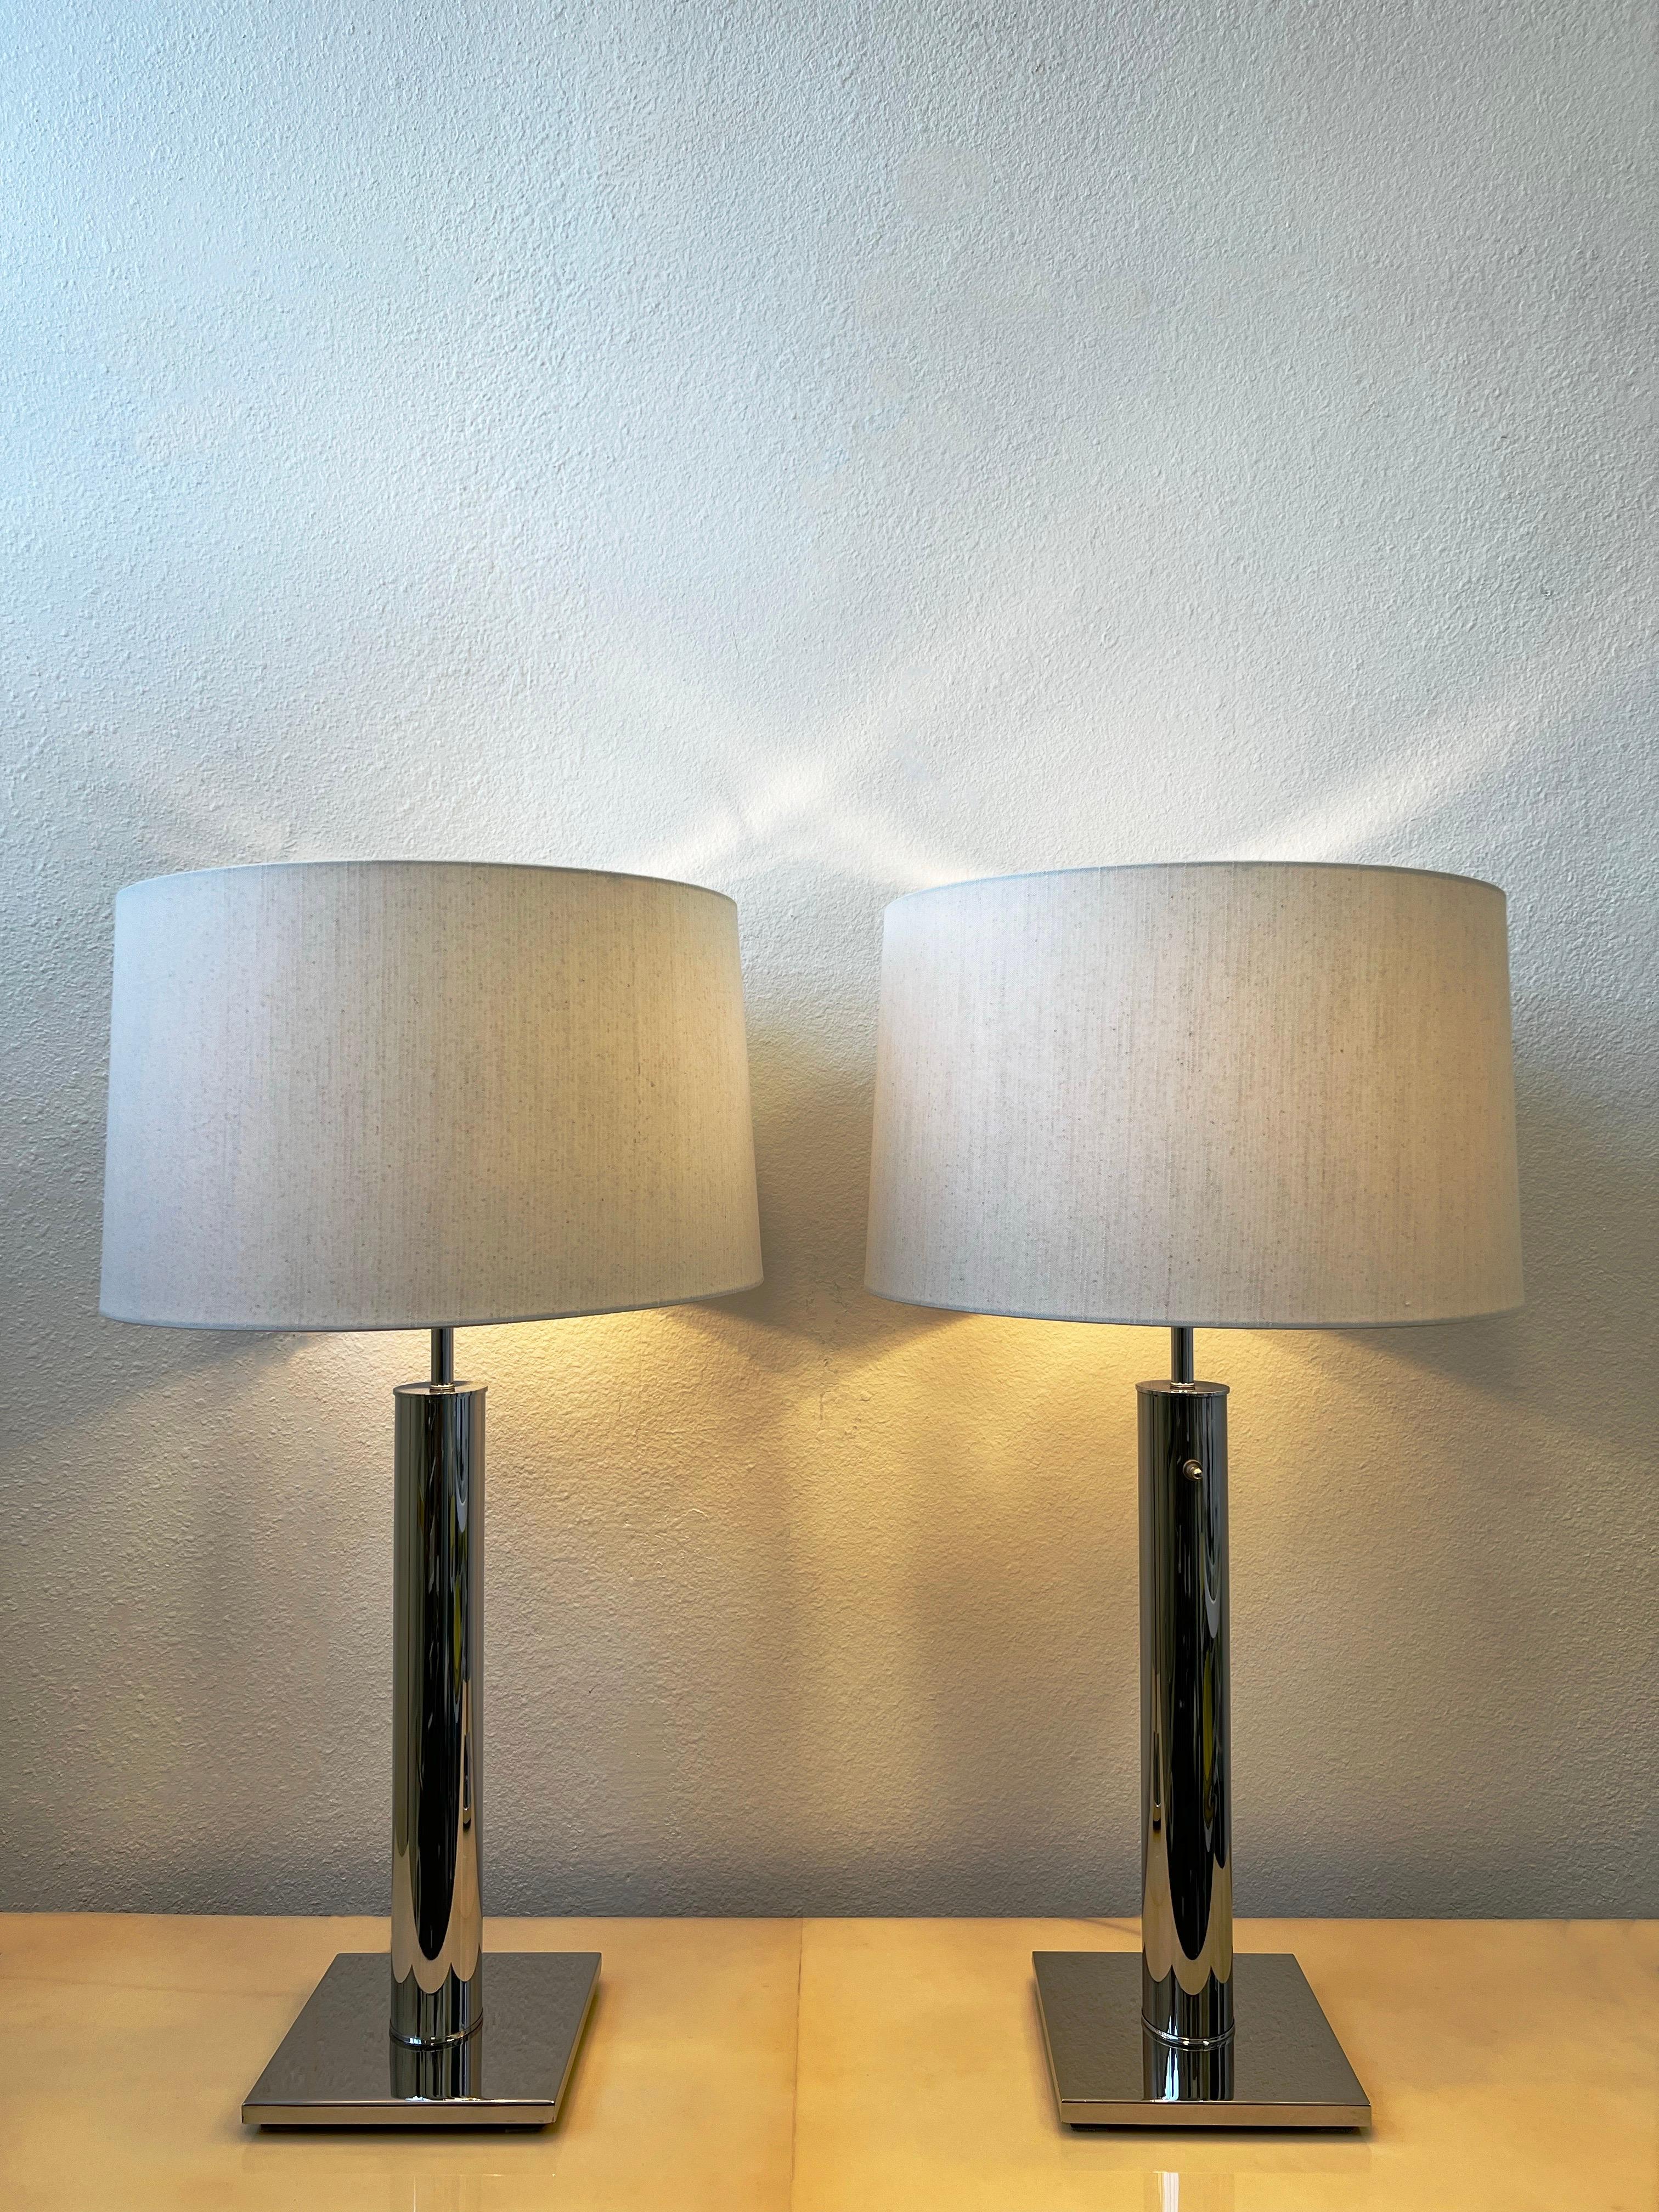 Paire de lampes de table en chrome poli des années 1960 par Nessen Lightning. 
Nouveau câblage, nouveaux abat-jour en lin et réflecteurs en acrylique blanc. Ils conservent les labels Nessen.

Elles sont dotées d'un interrupteur rotatif à trois voies